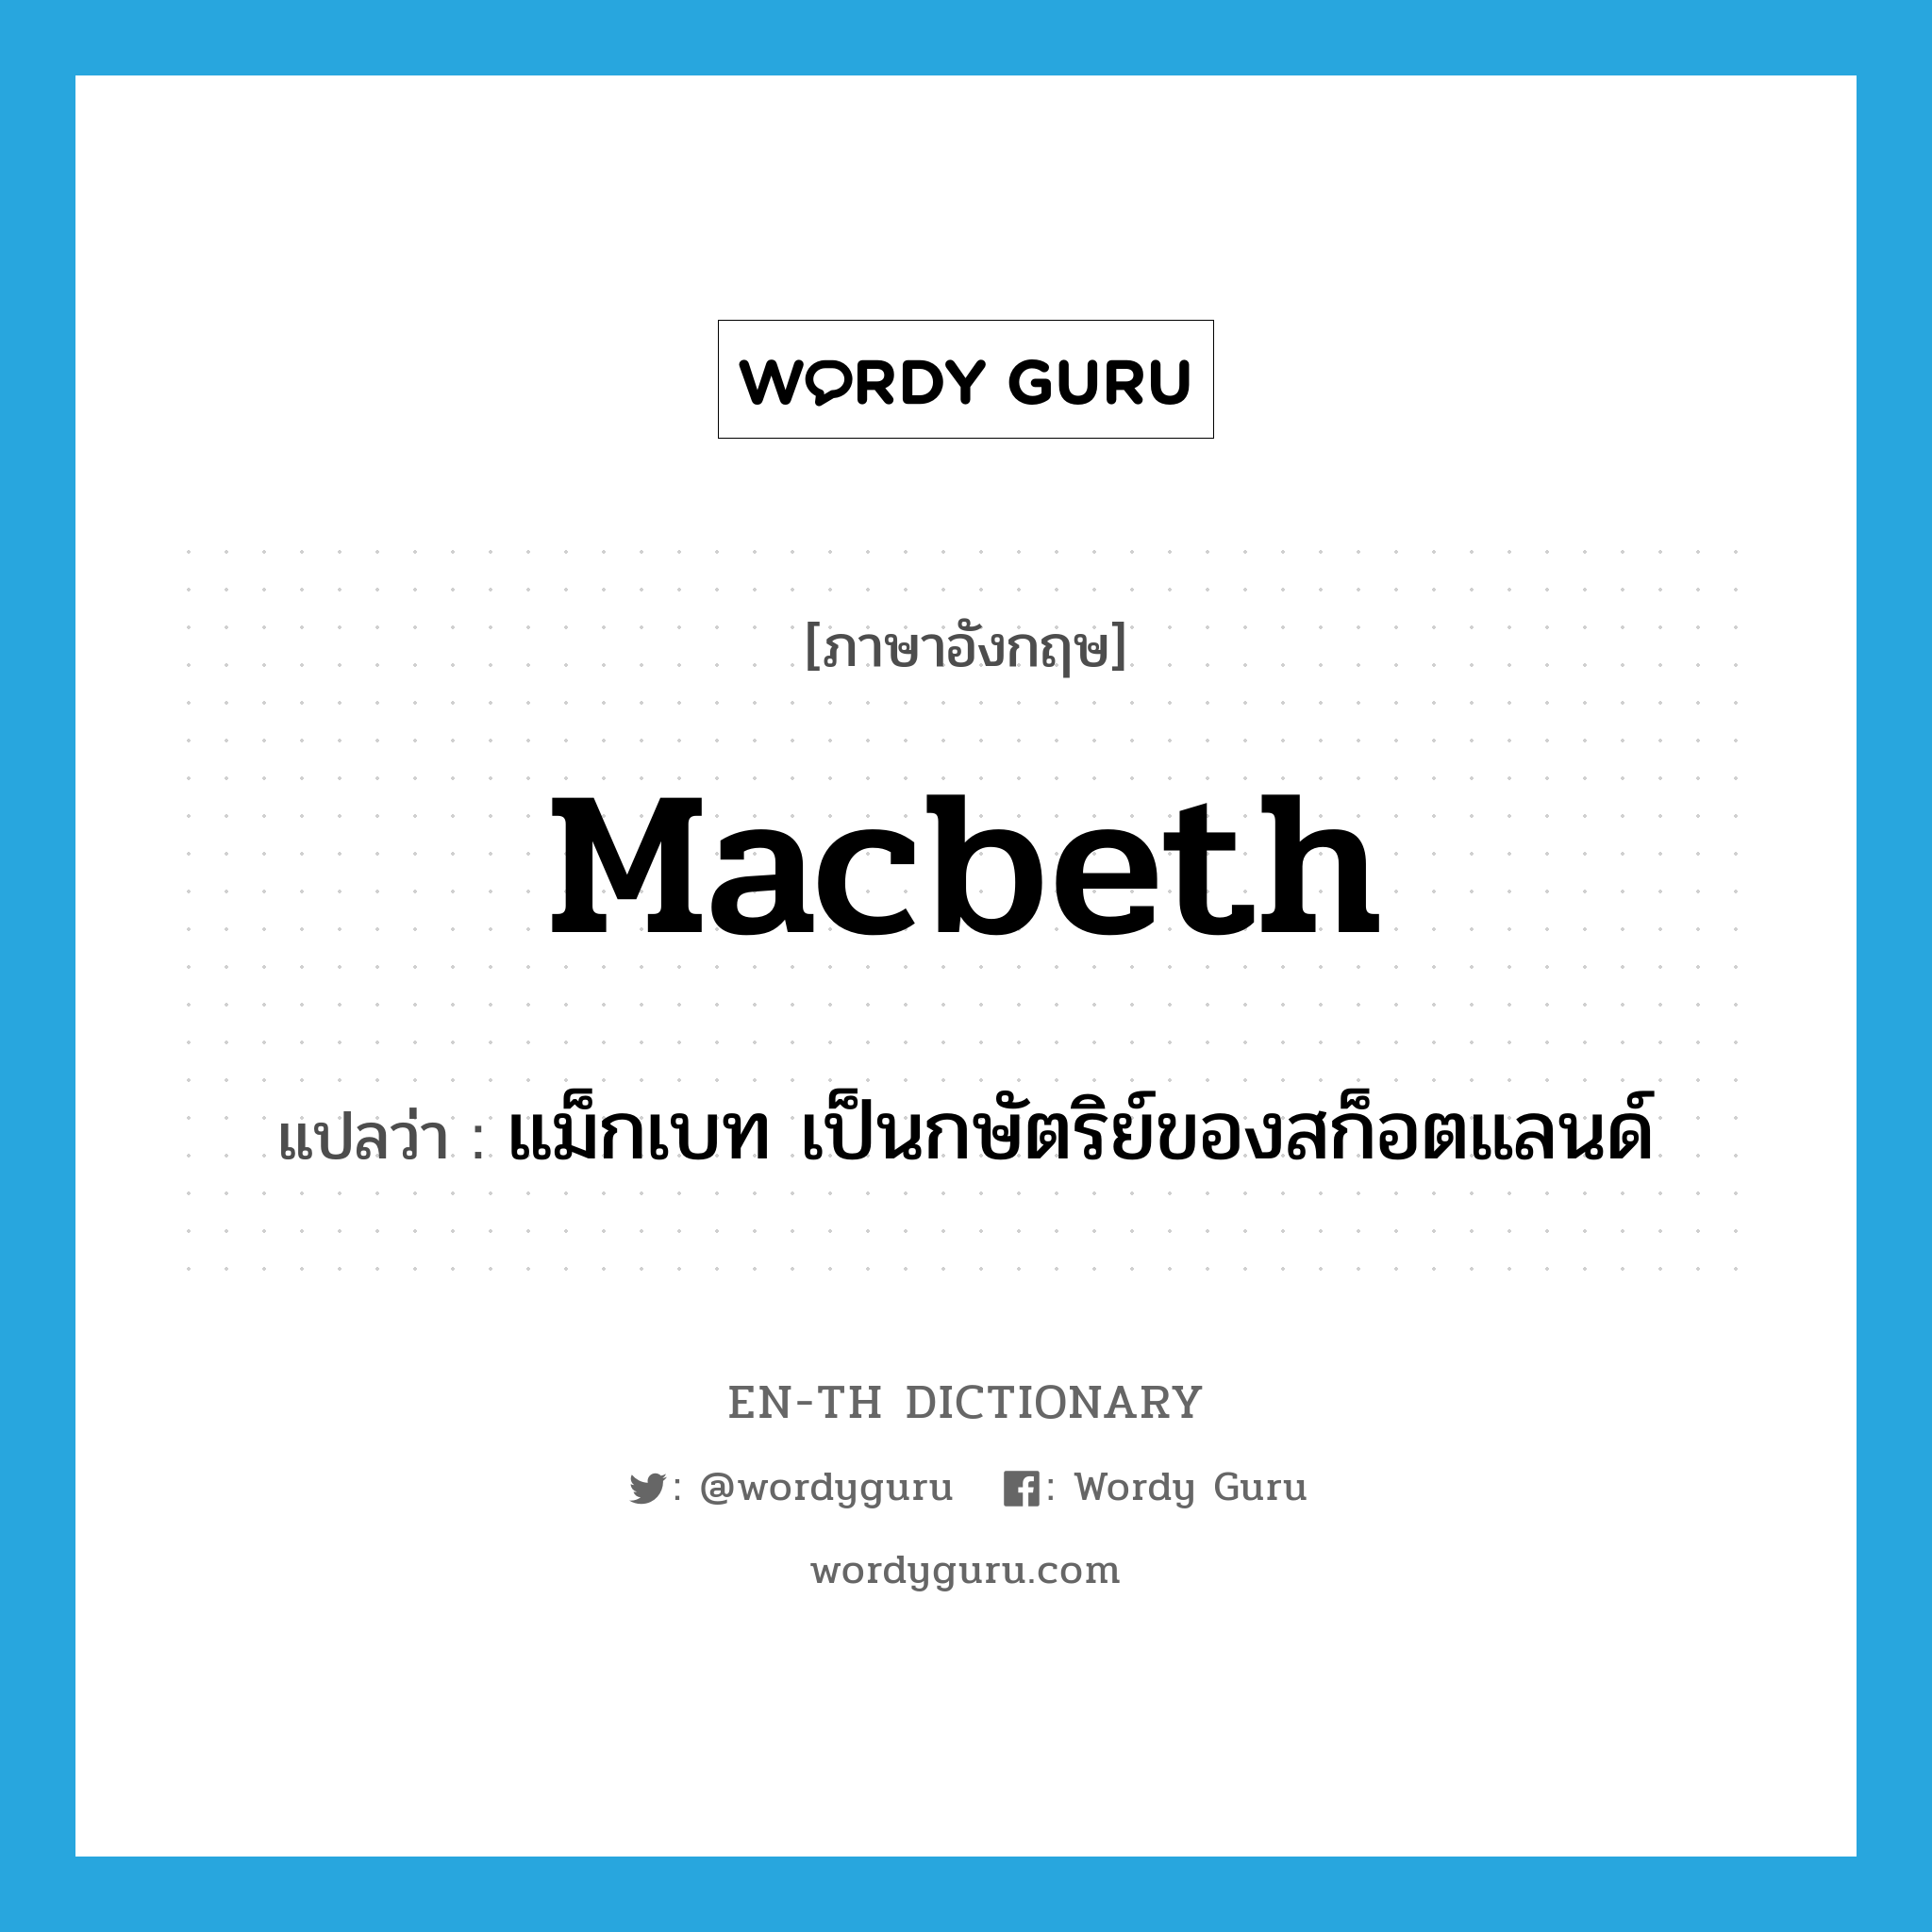 แม็กเบท เป็นกษัตริย์ของสก็อตแลนด์ ภาษาอังกฤษ?, คำศัพท์ภาษาอังกฤษ แม็กเบท เป็นกษัตริย์ของสก็อตแลนด์ แปลว่า Macbeth ประเภท N หมวด N